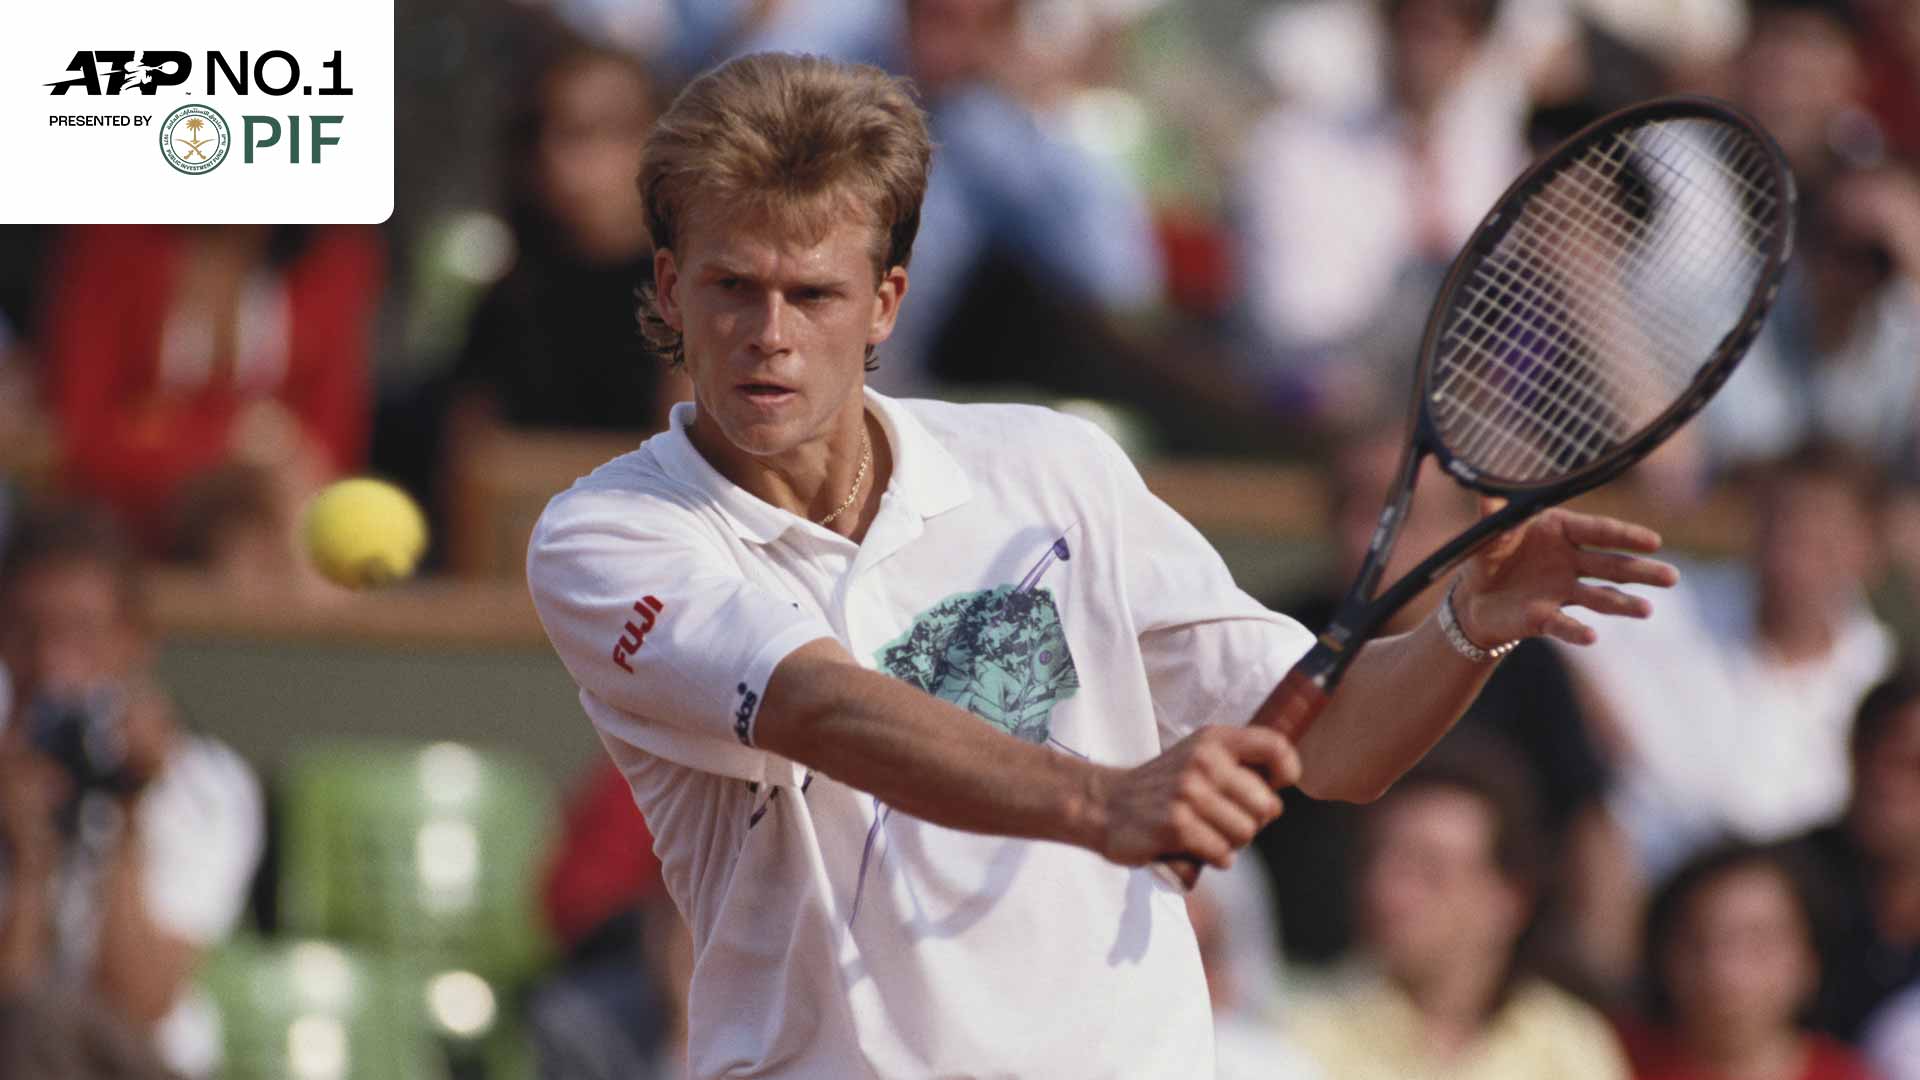 Stefan Edberg alcanzó por primera vez el No. 1 en 1990.